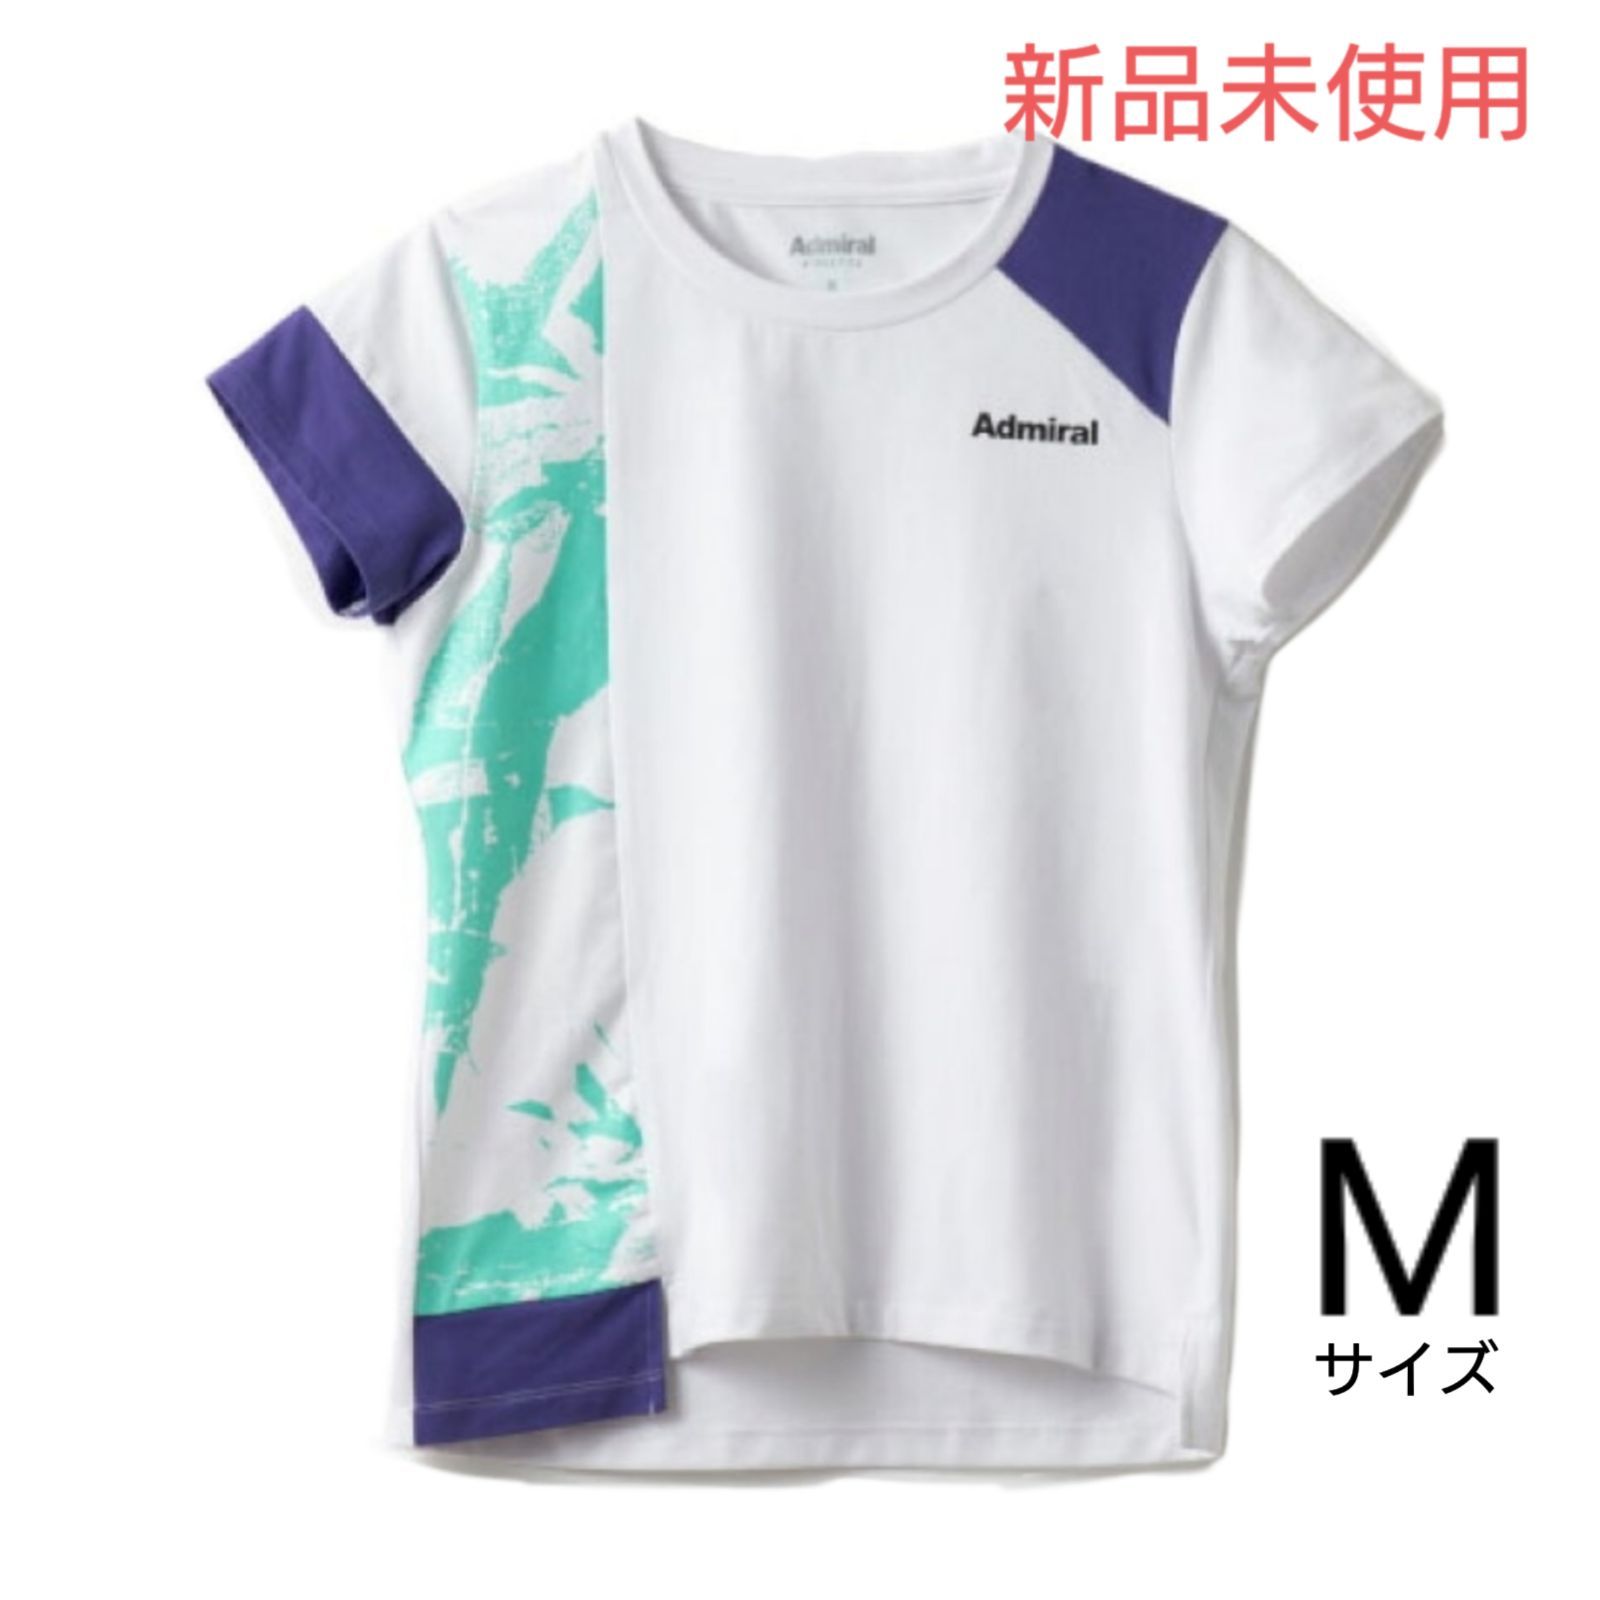 Admiral アドミラル テニス ウェア シャツ Mサイズ 新品未使用 白紫 - メルカリ